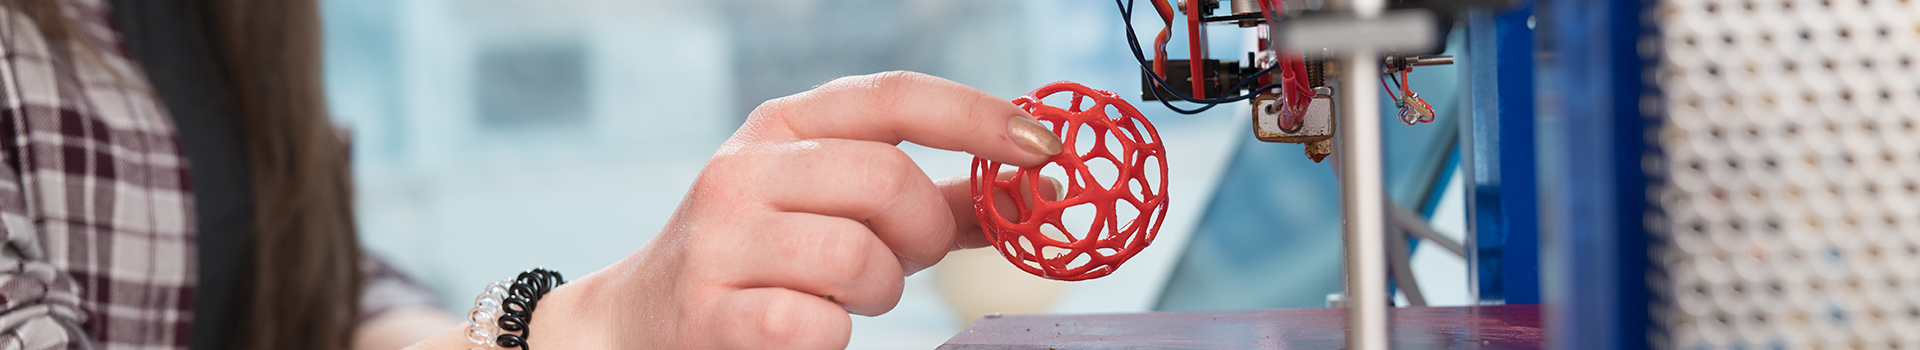 Goedkope 3D-printers voor onderwijs, is het mogelijk?